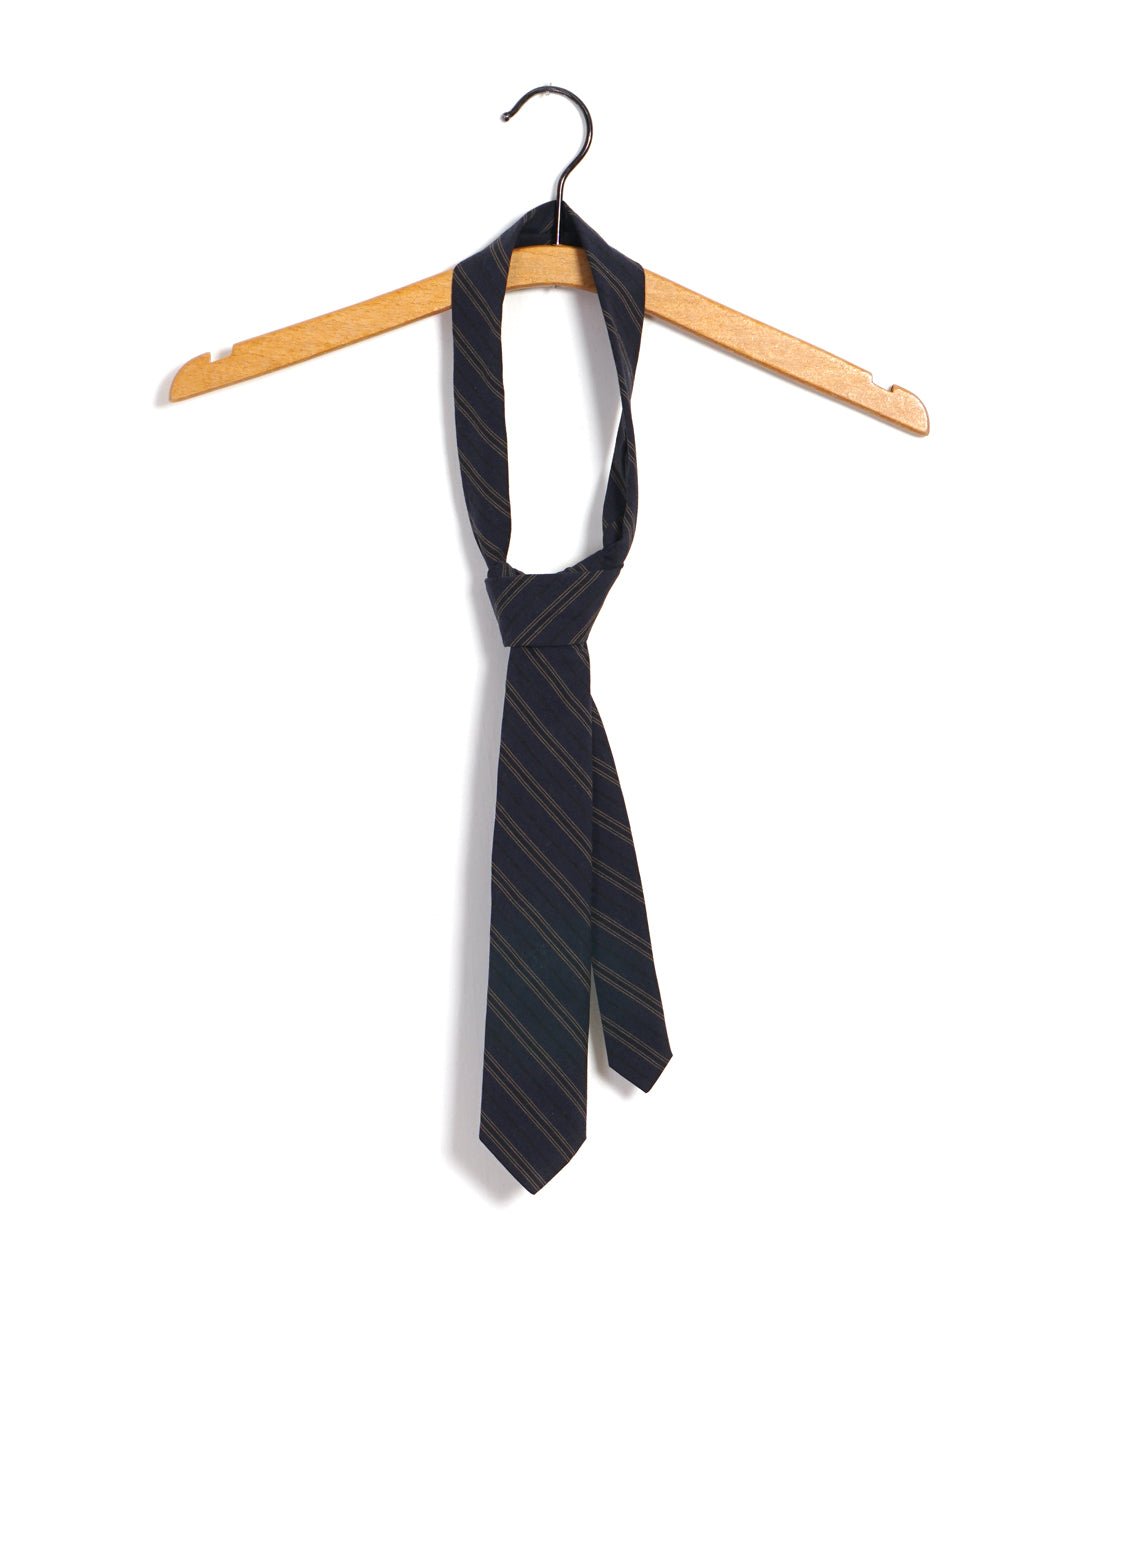 HANSEN GARMENTS - TIE | Striped Tie | Navy Stripes - HANSEN Garments